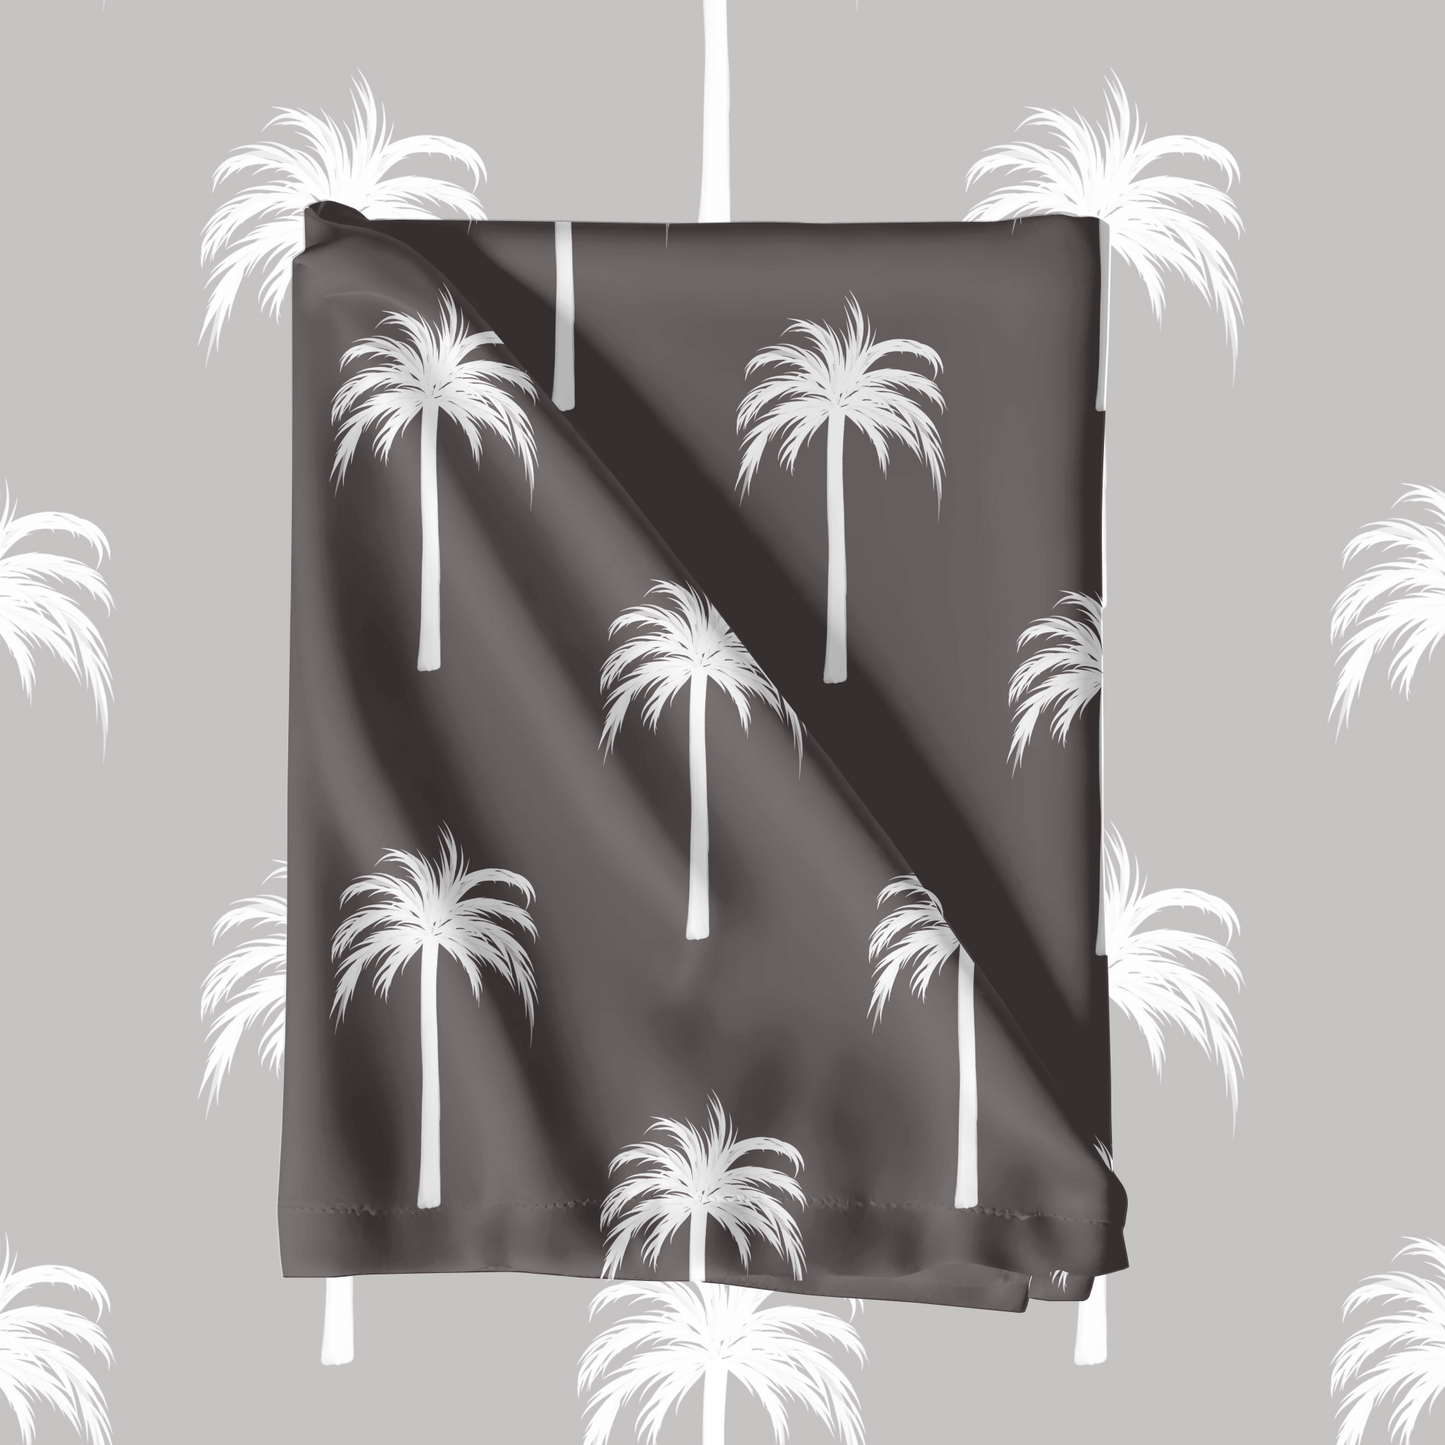 Black & White Palm Trees Pattern